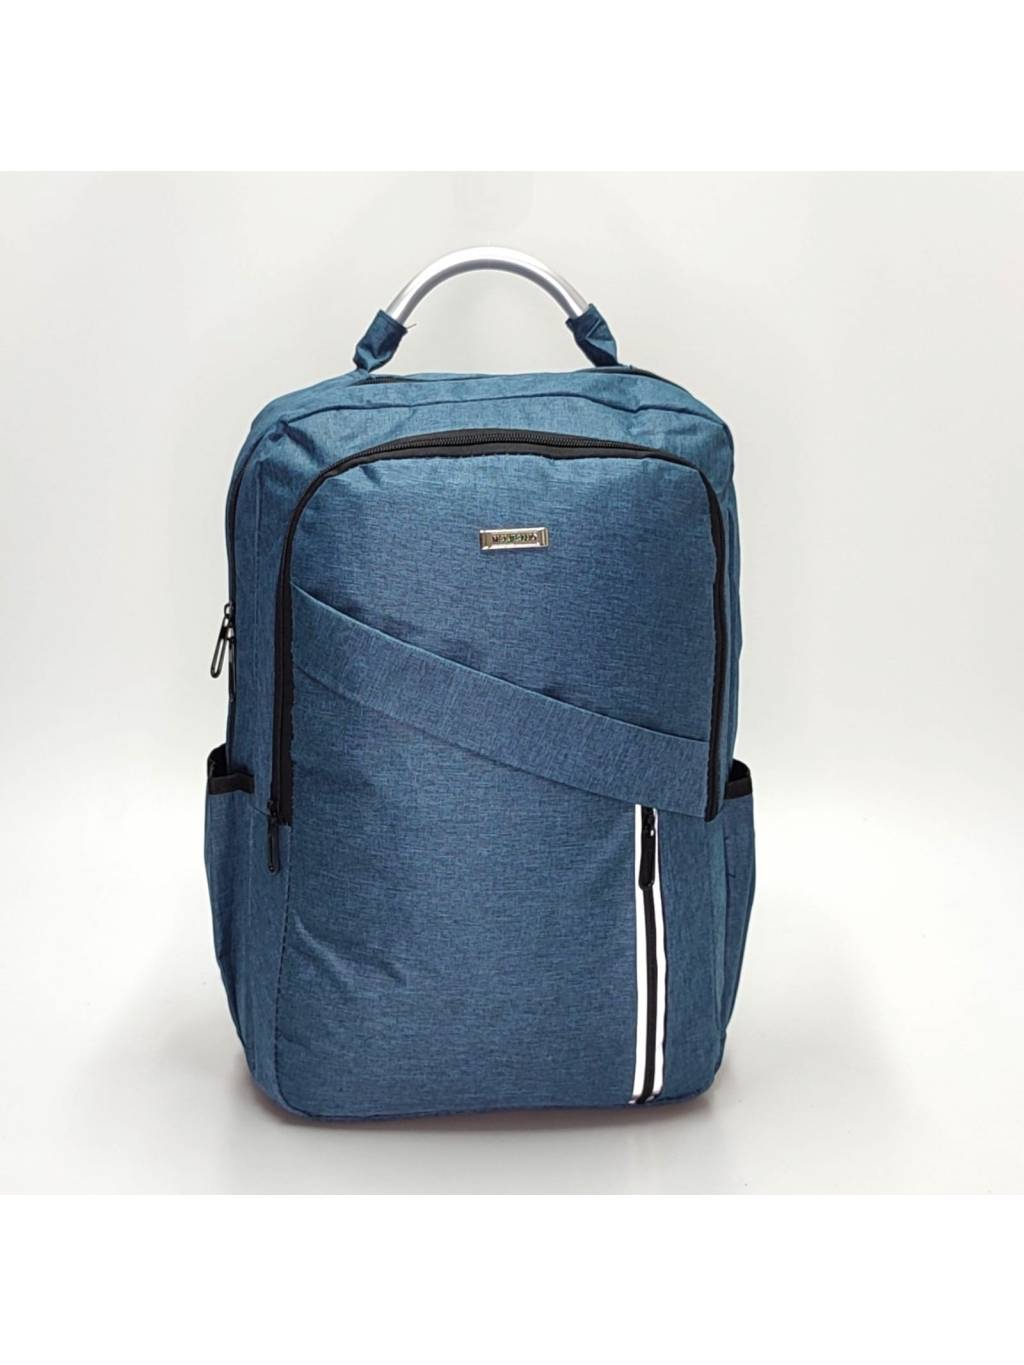 Športový ruksak 7172 modrý www.kabelky vypredaj (6)